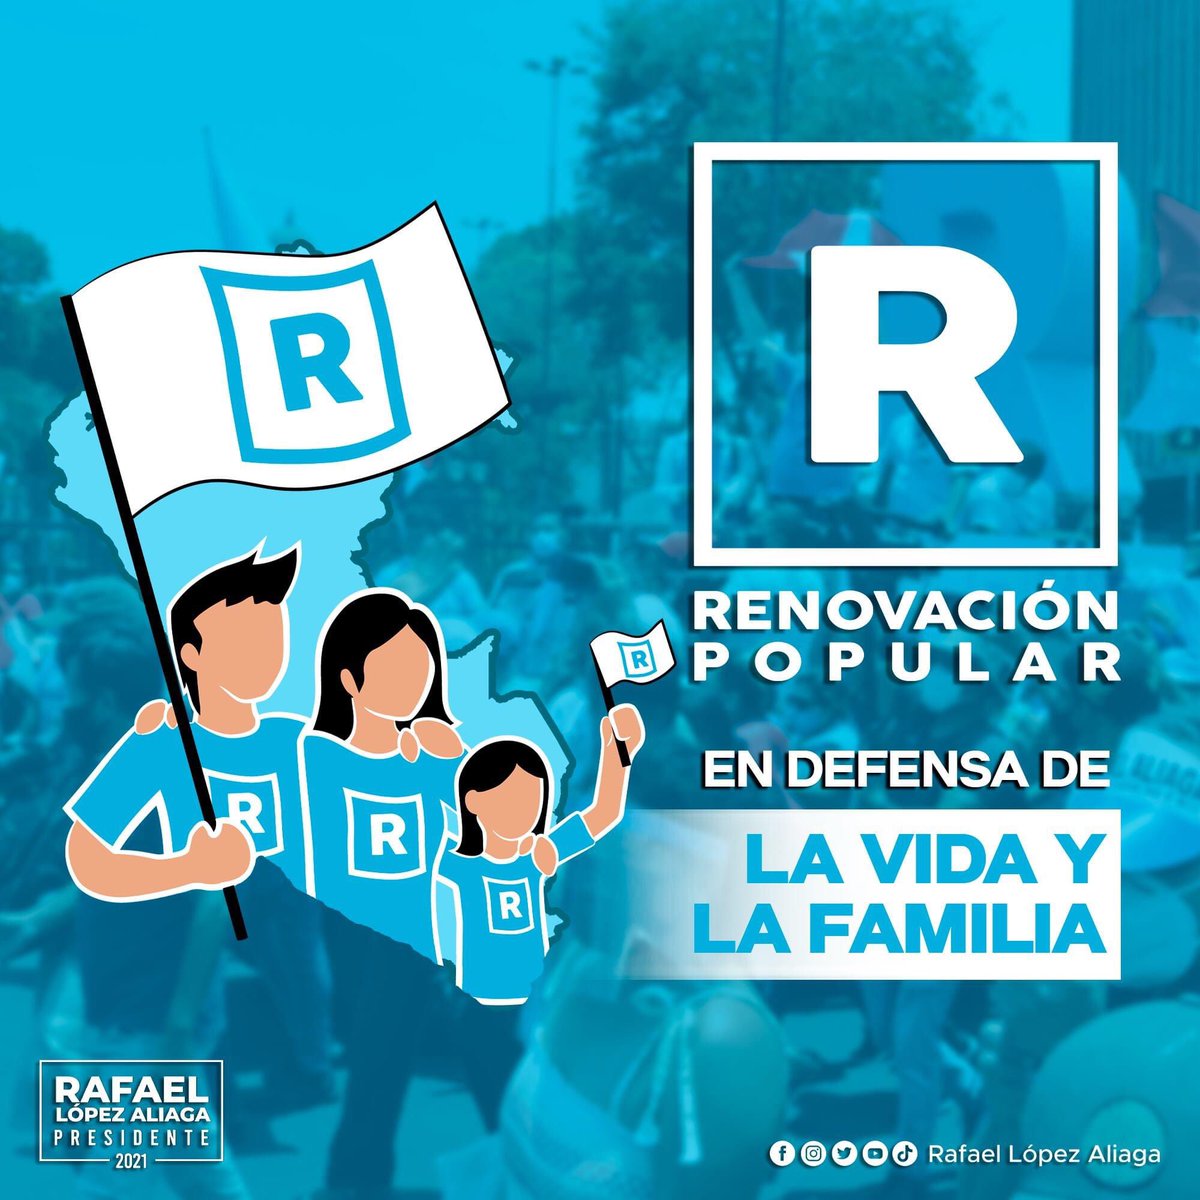 No se queden sin votar ...
Por el cambio, pro vida, pro familia, anticorrupción 
#RafaelPresidente2021 
#RafaelEnPrimeraVuelta 
#RenovacionPopular 
#RenovacionPopular